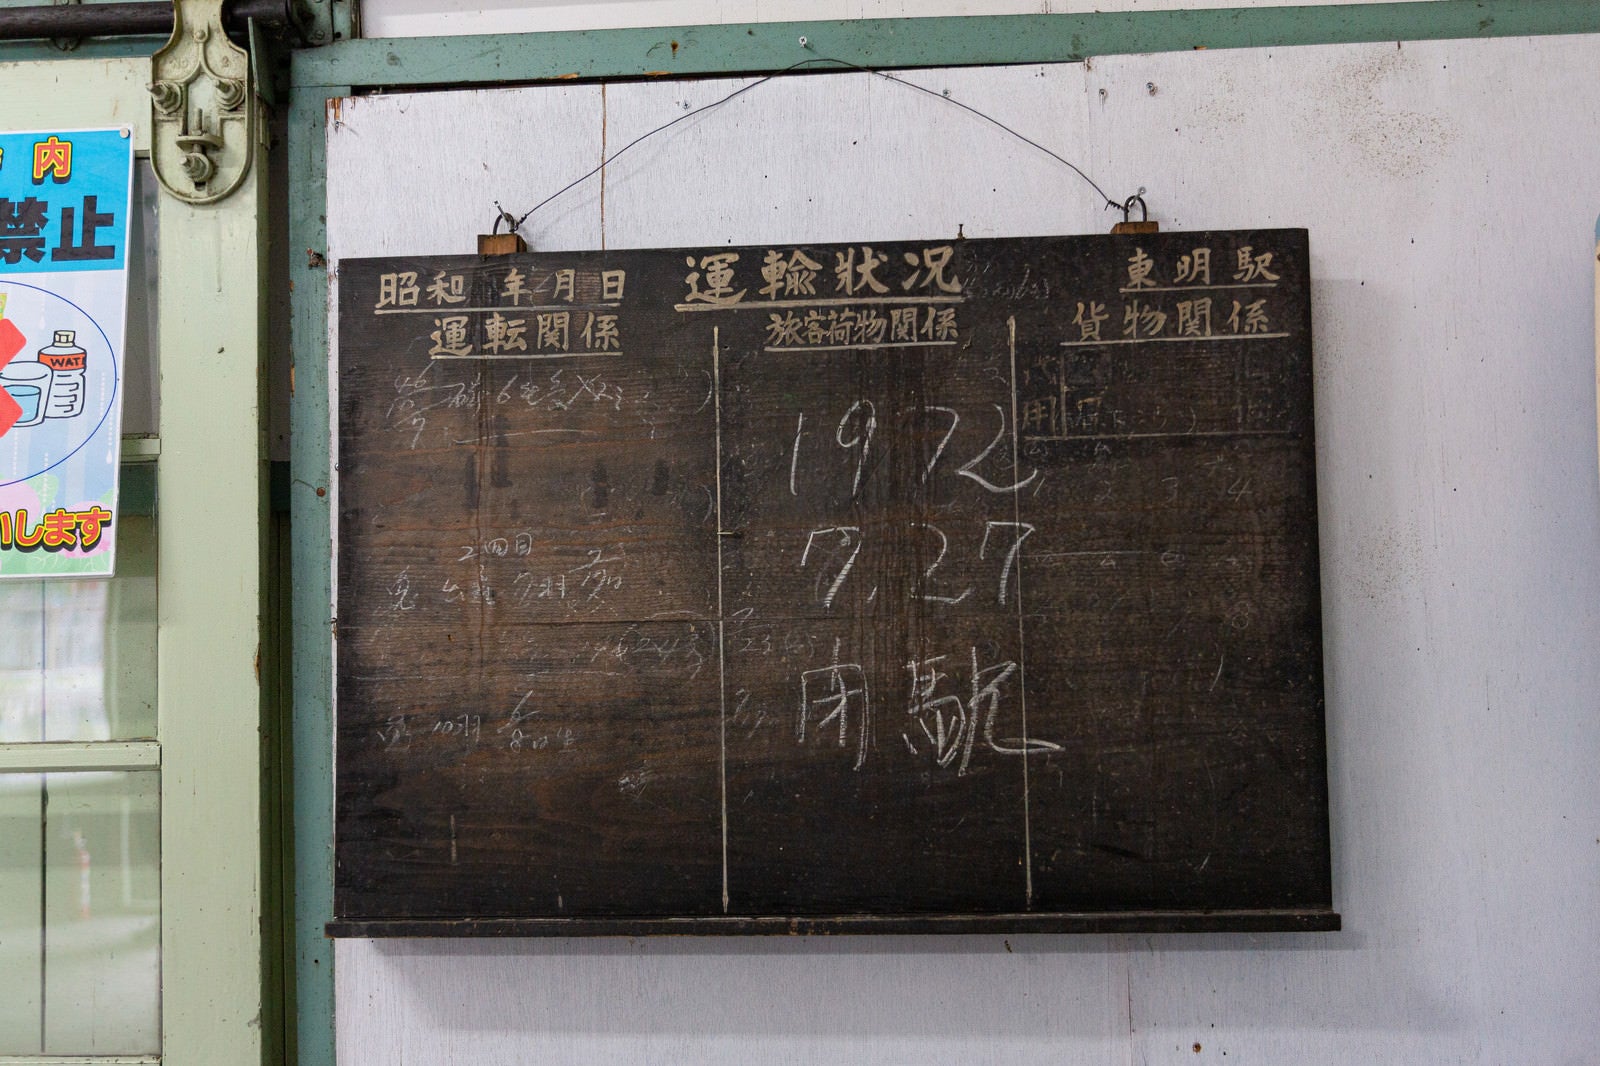 「美唄鉄道東明駅の黒板に書かれた「閉駅」の文字」の写真